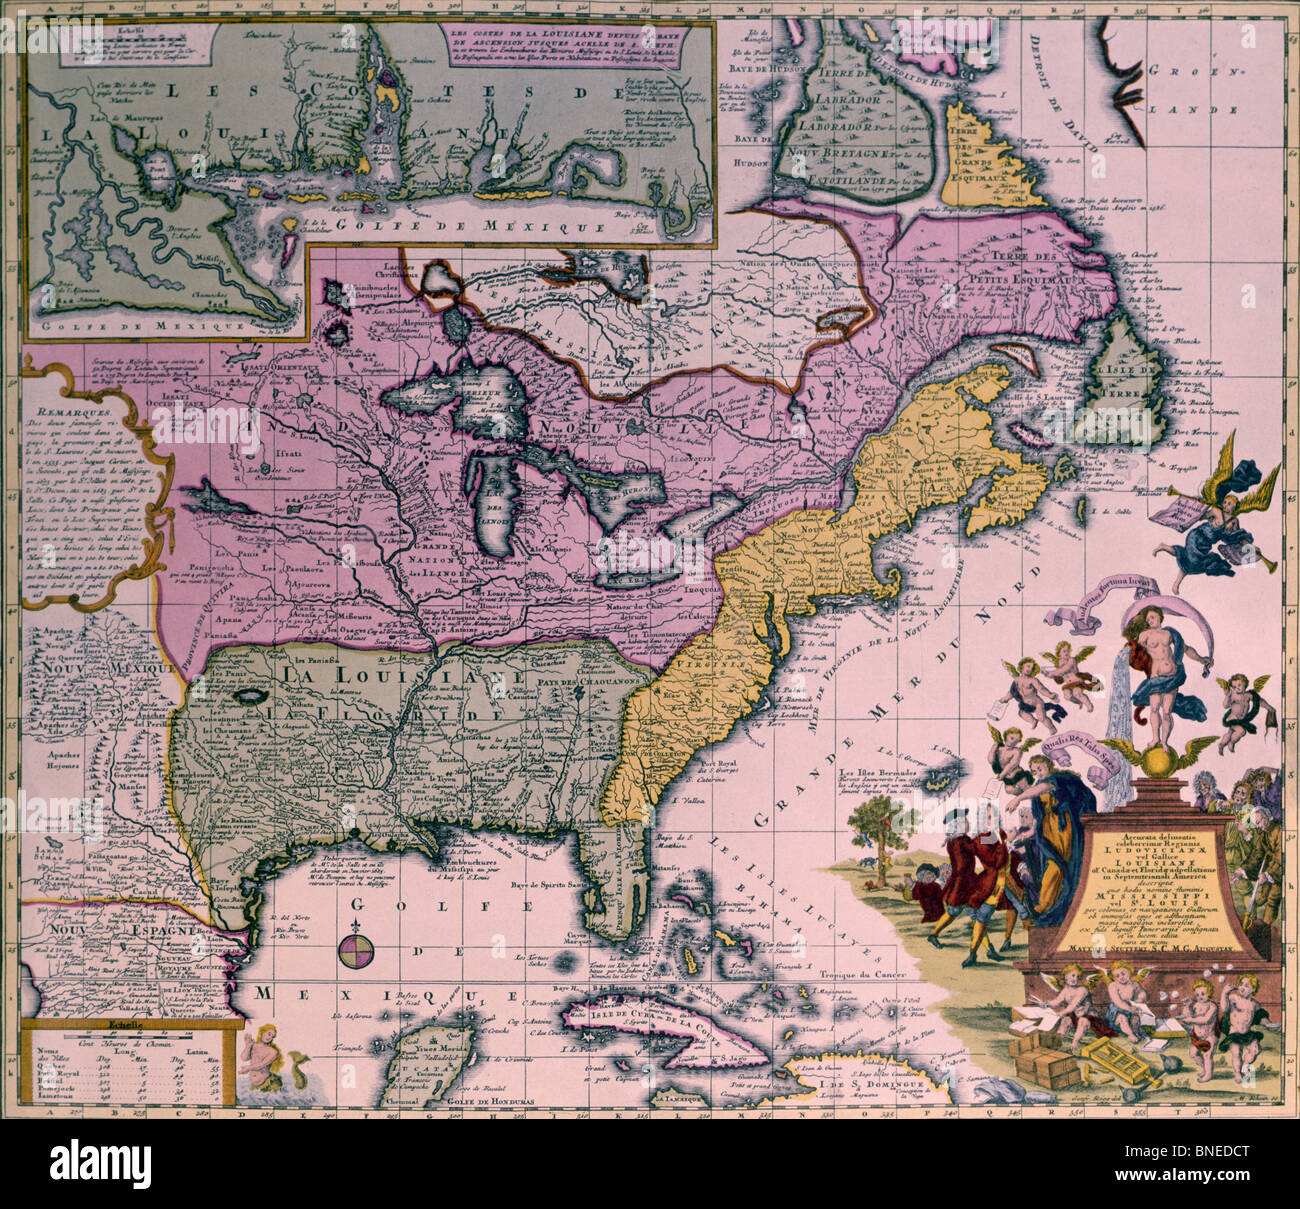 Amérique du Nord, la carte, vers 1735 Banque D'Images